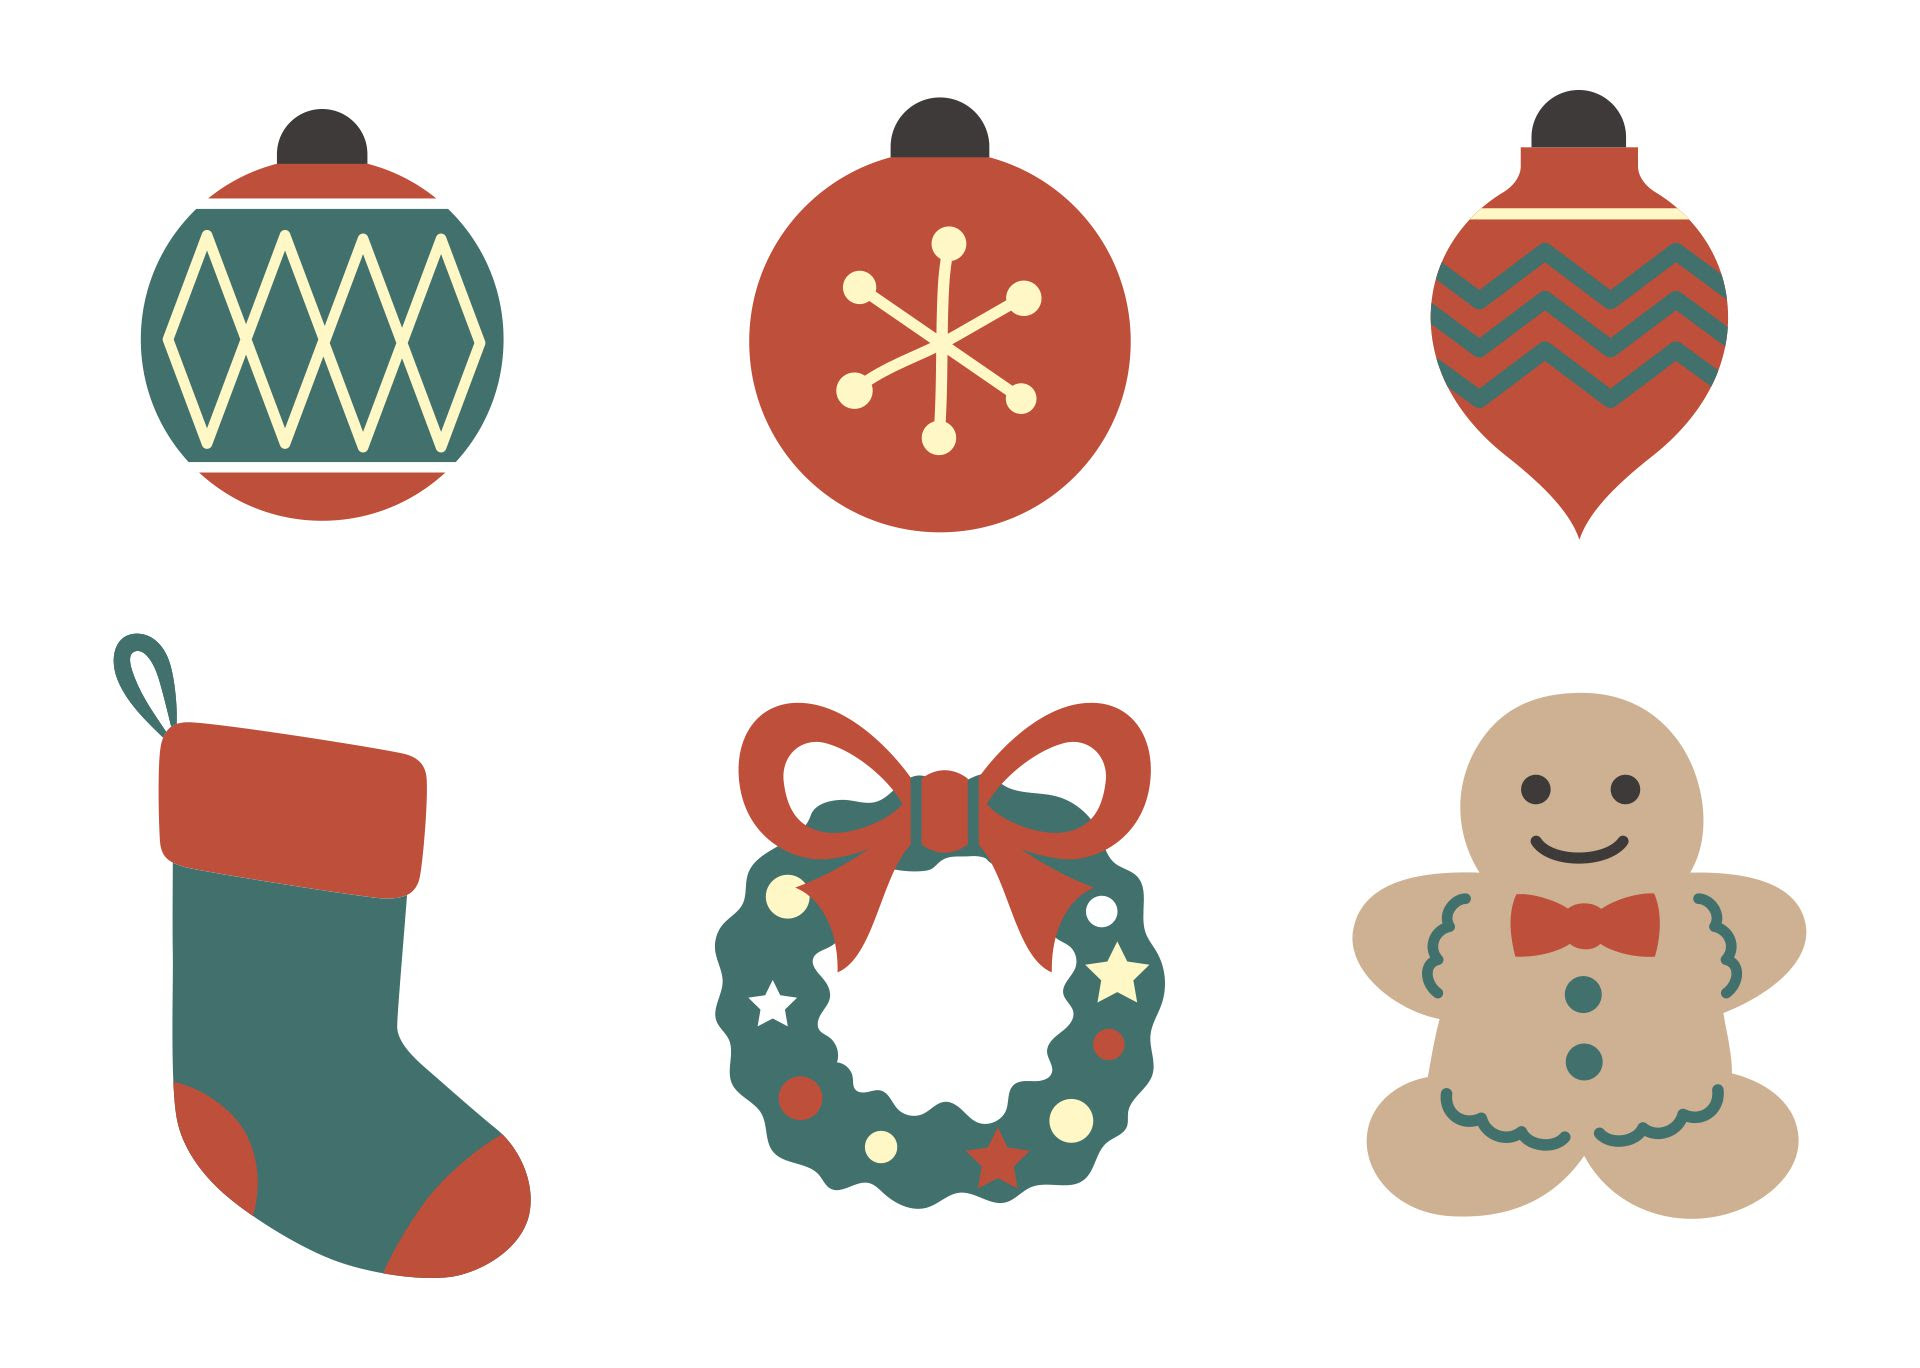 Free Printable Christmas Ornaments For Kids